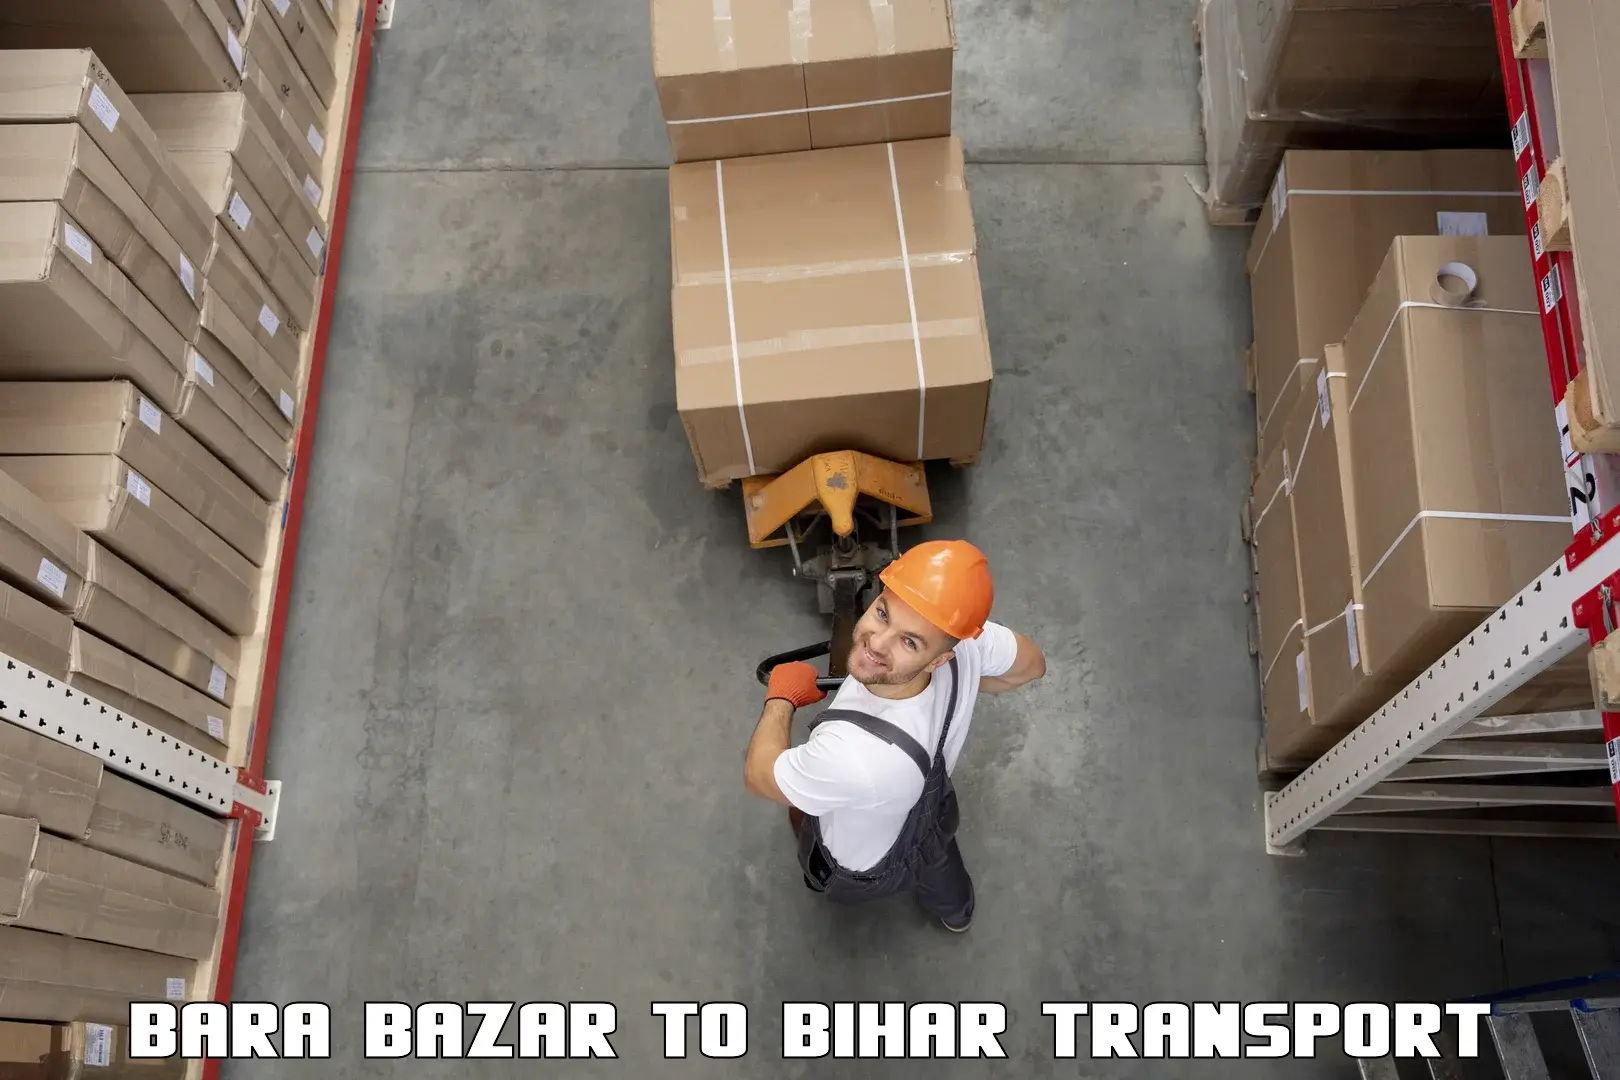 Bike shipping service Bara Bazar to Korha